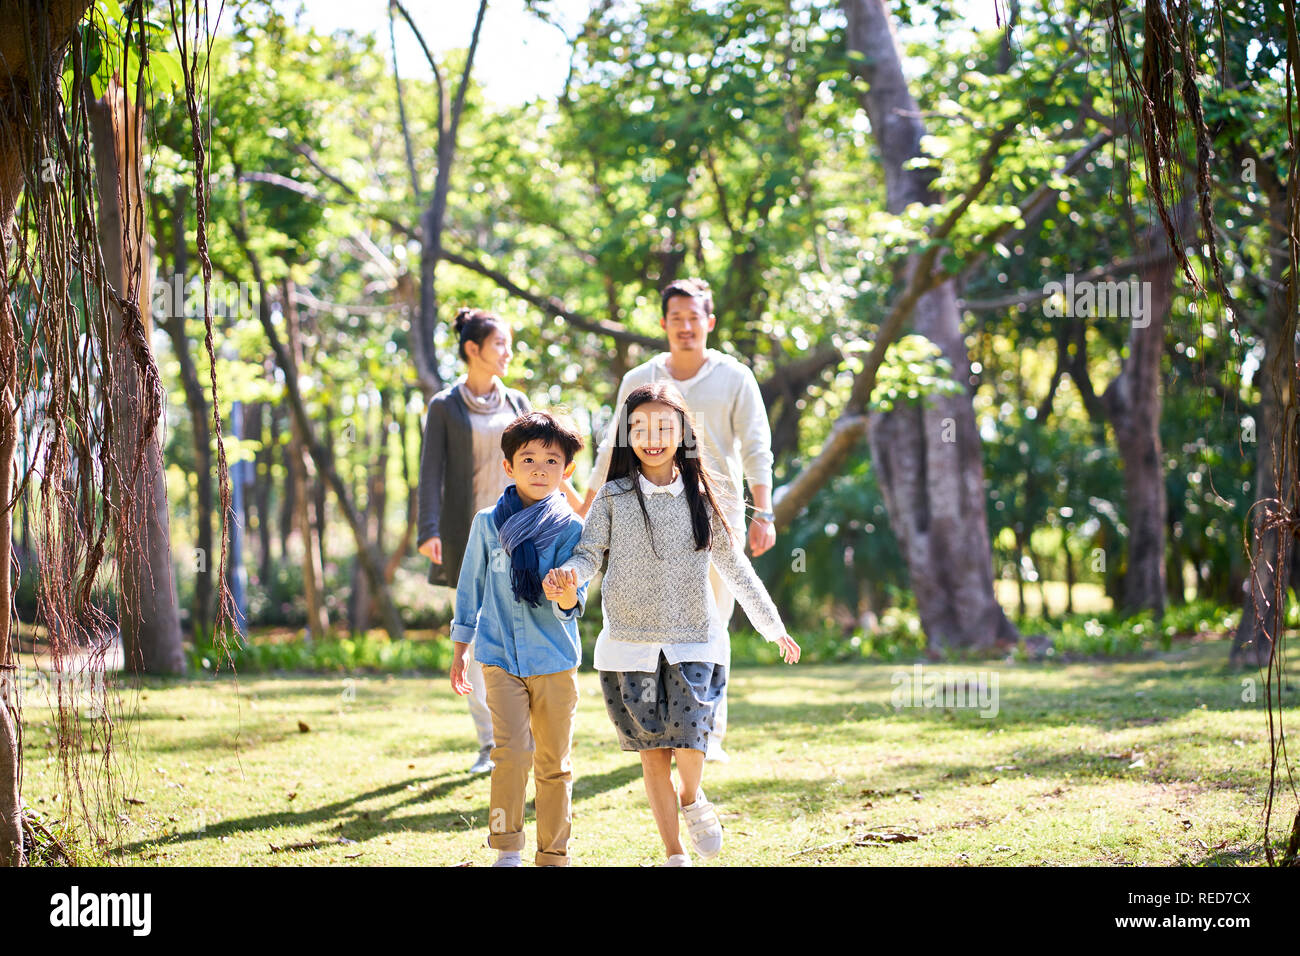 Famille avec deux enfants asiatiques relaxant de marche s'amusant dans le parc heureux et souriants. Banque D'Images